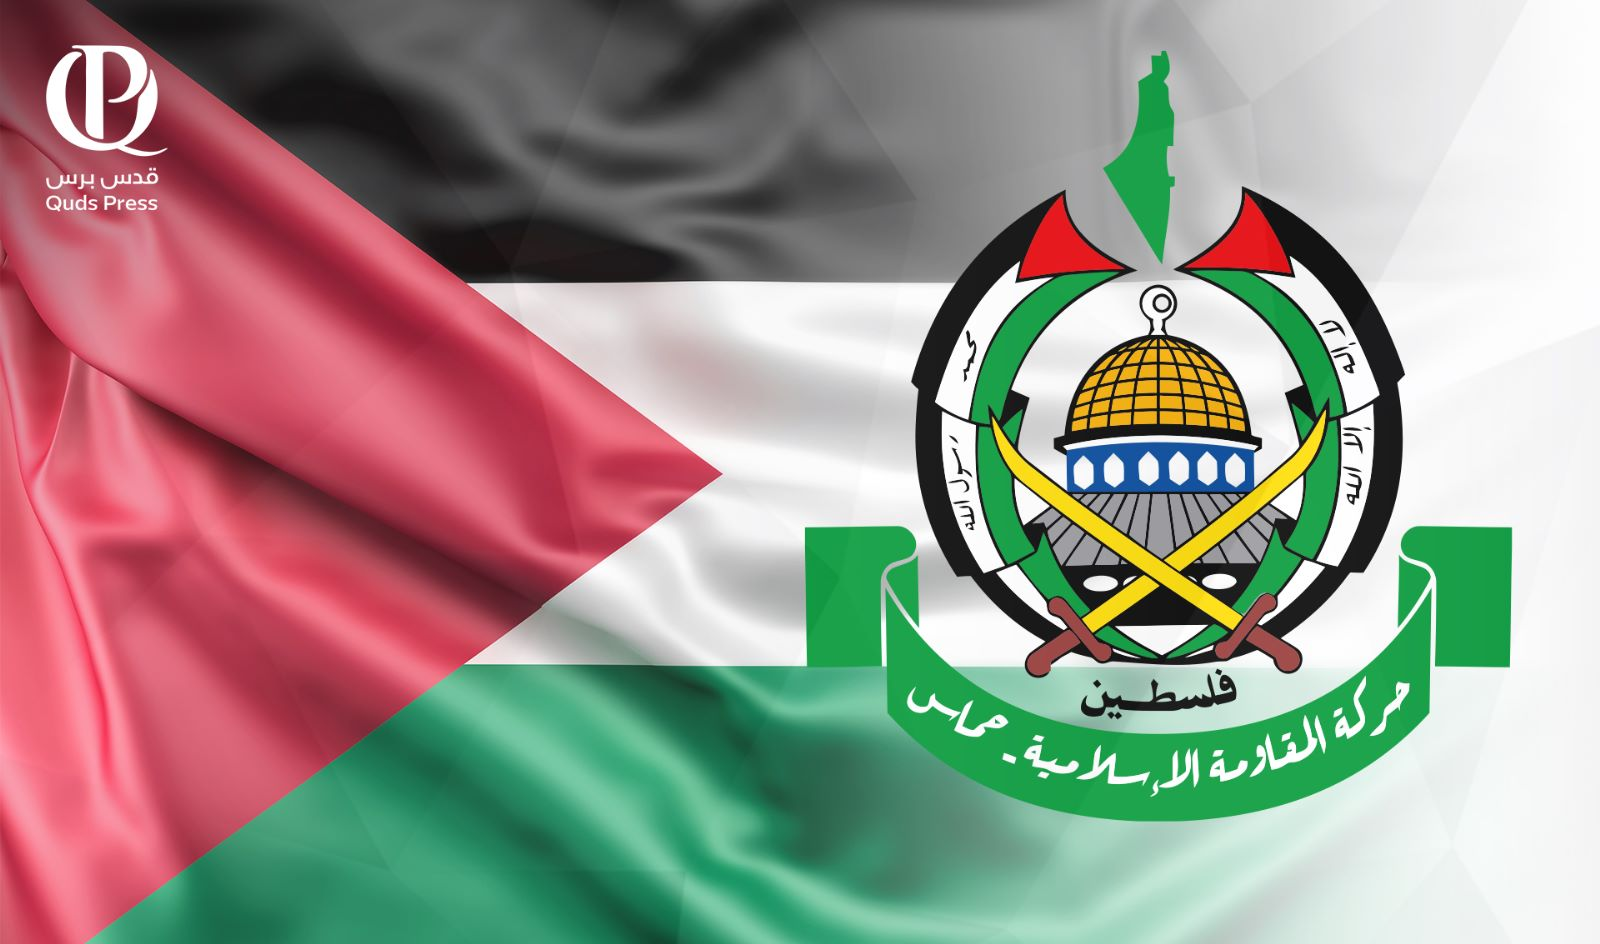 "حماس": أمر "العدل الدولية" بإدخال المساعدات لغزة يحتاج لآلية تنفيذية تُفرض على الاحتلال